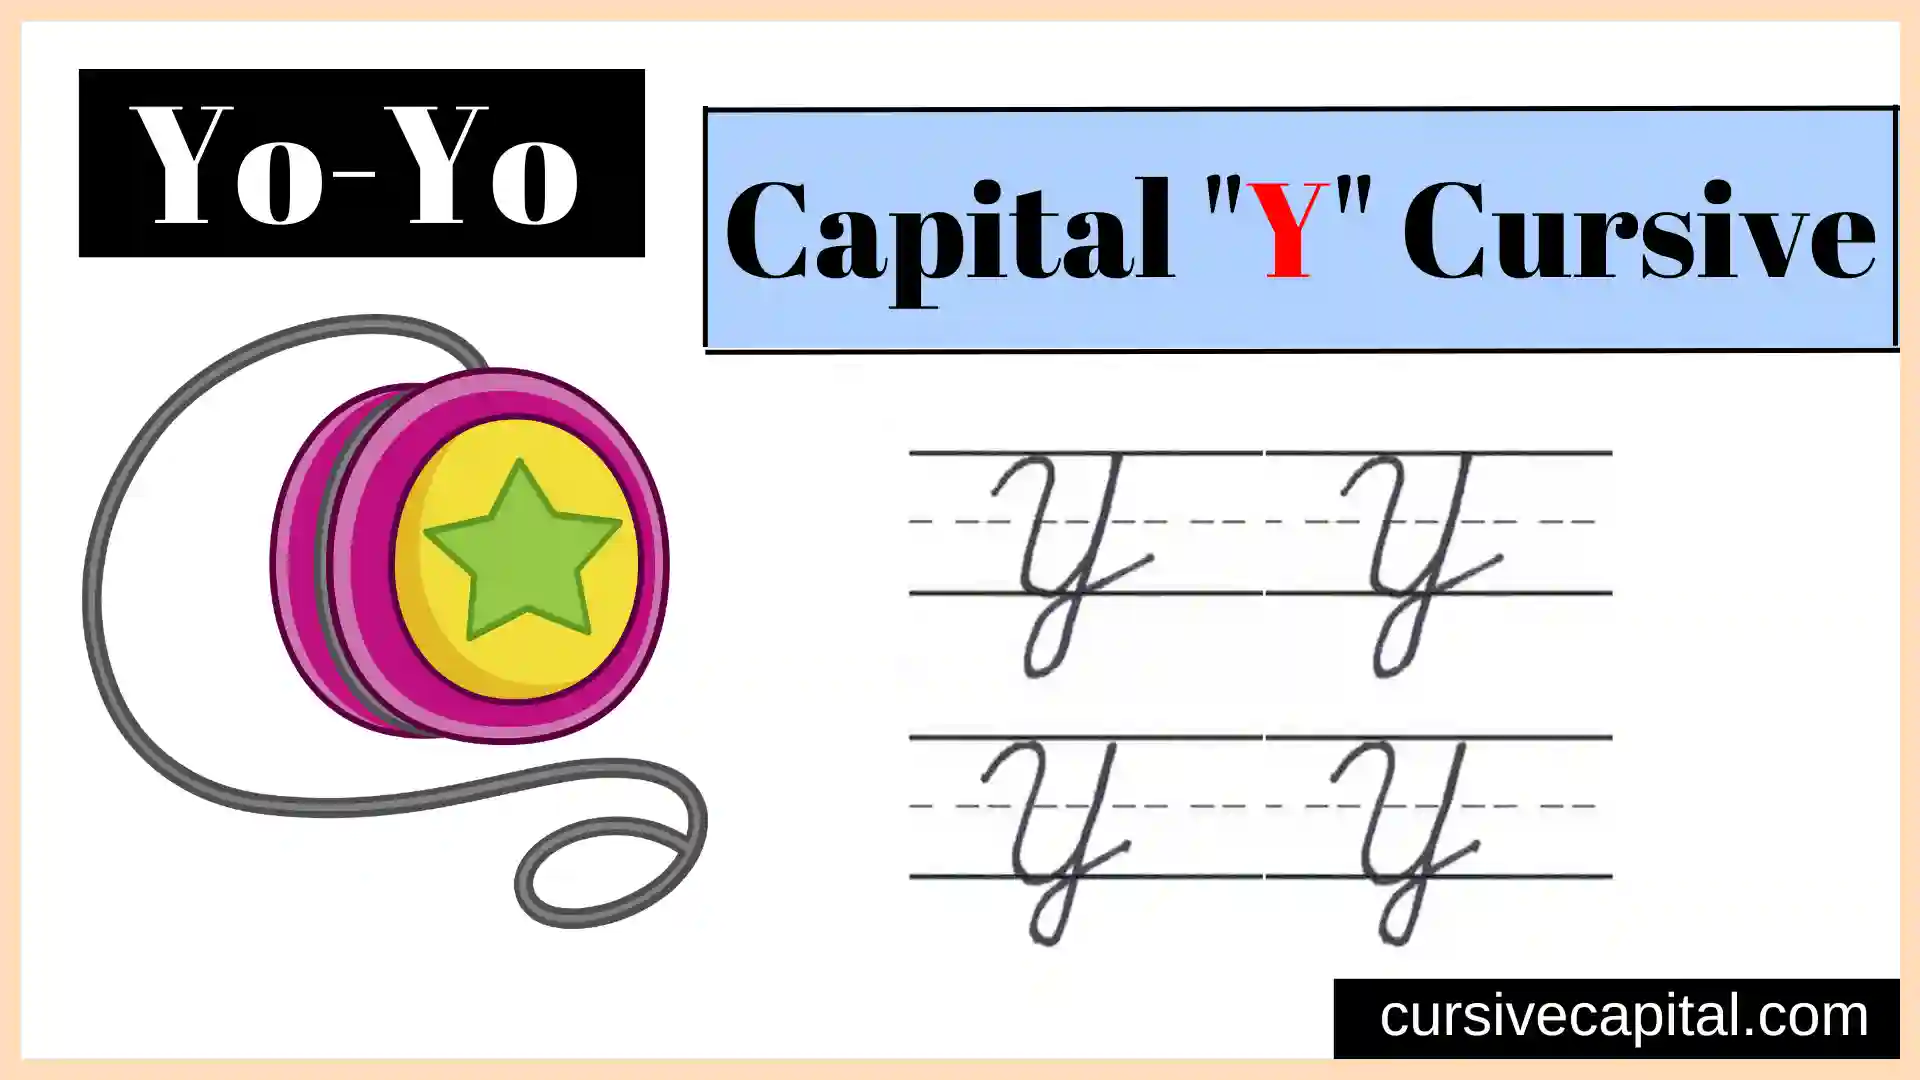 Capital Y cursive